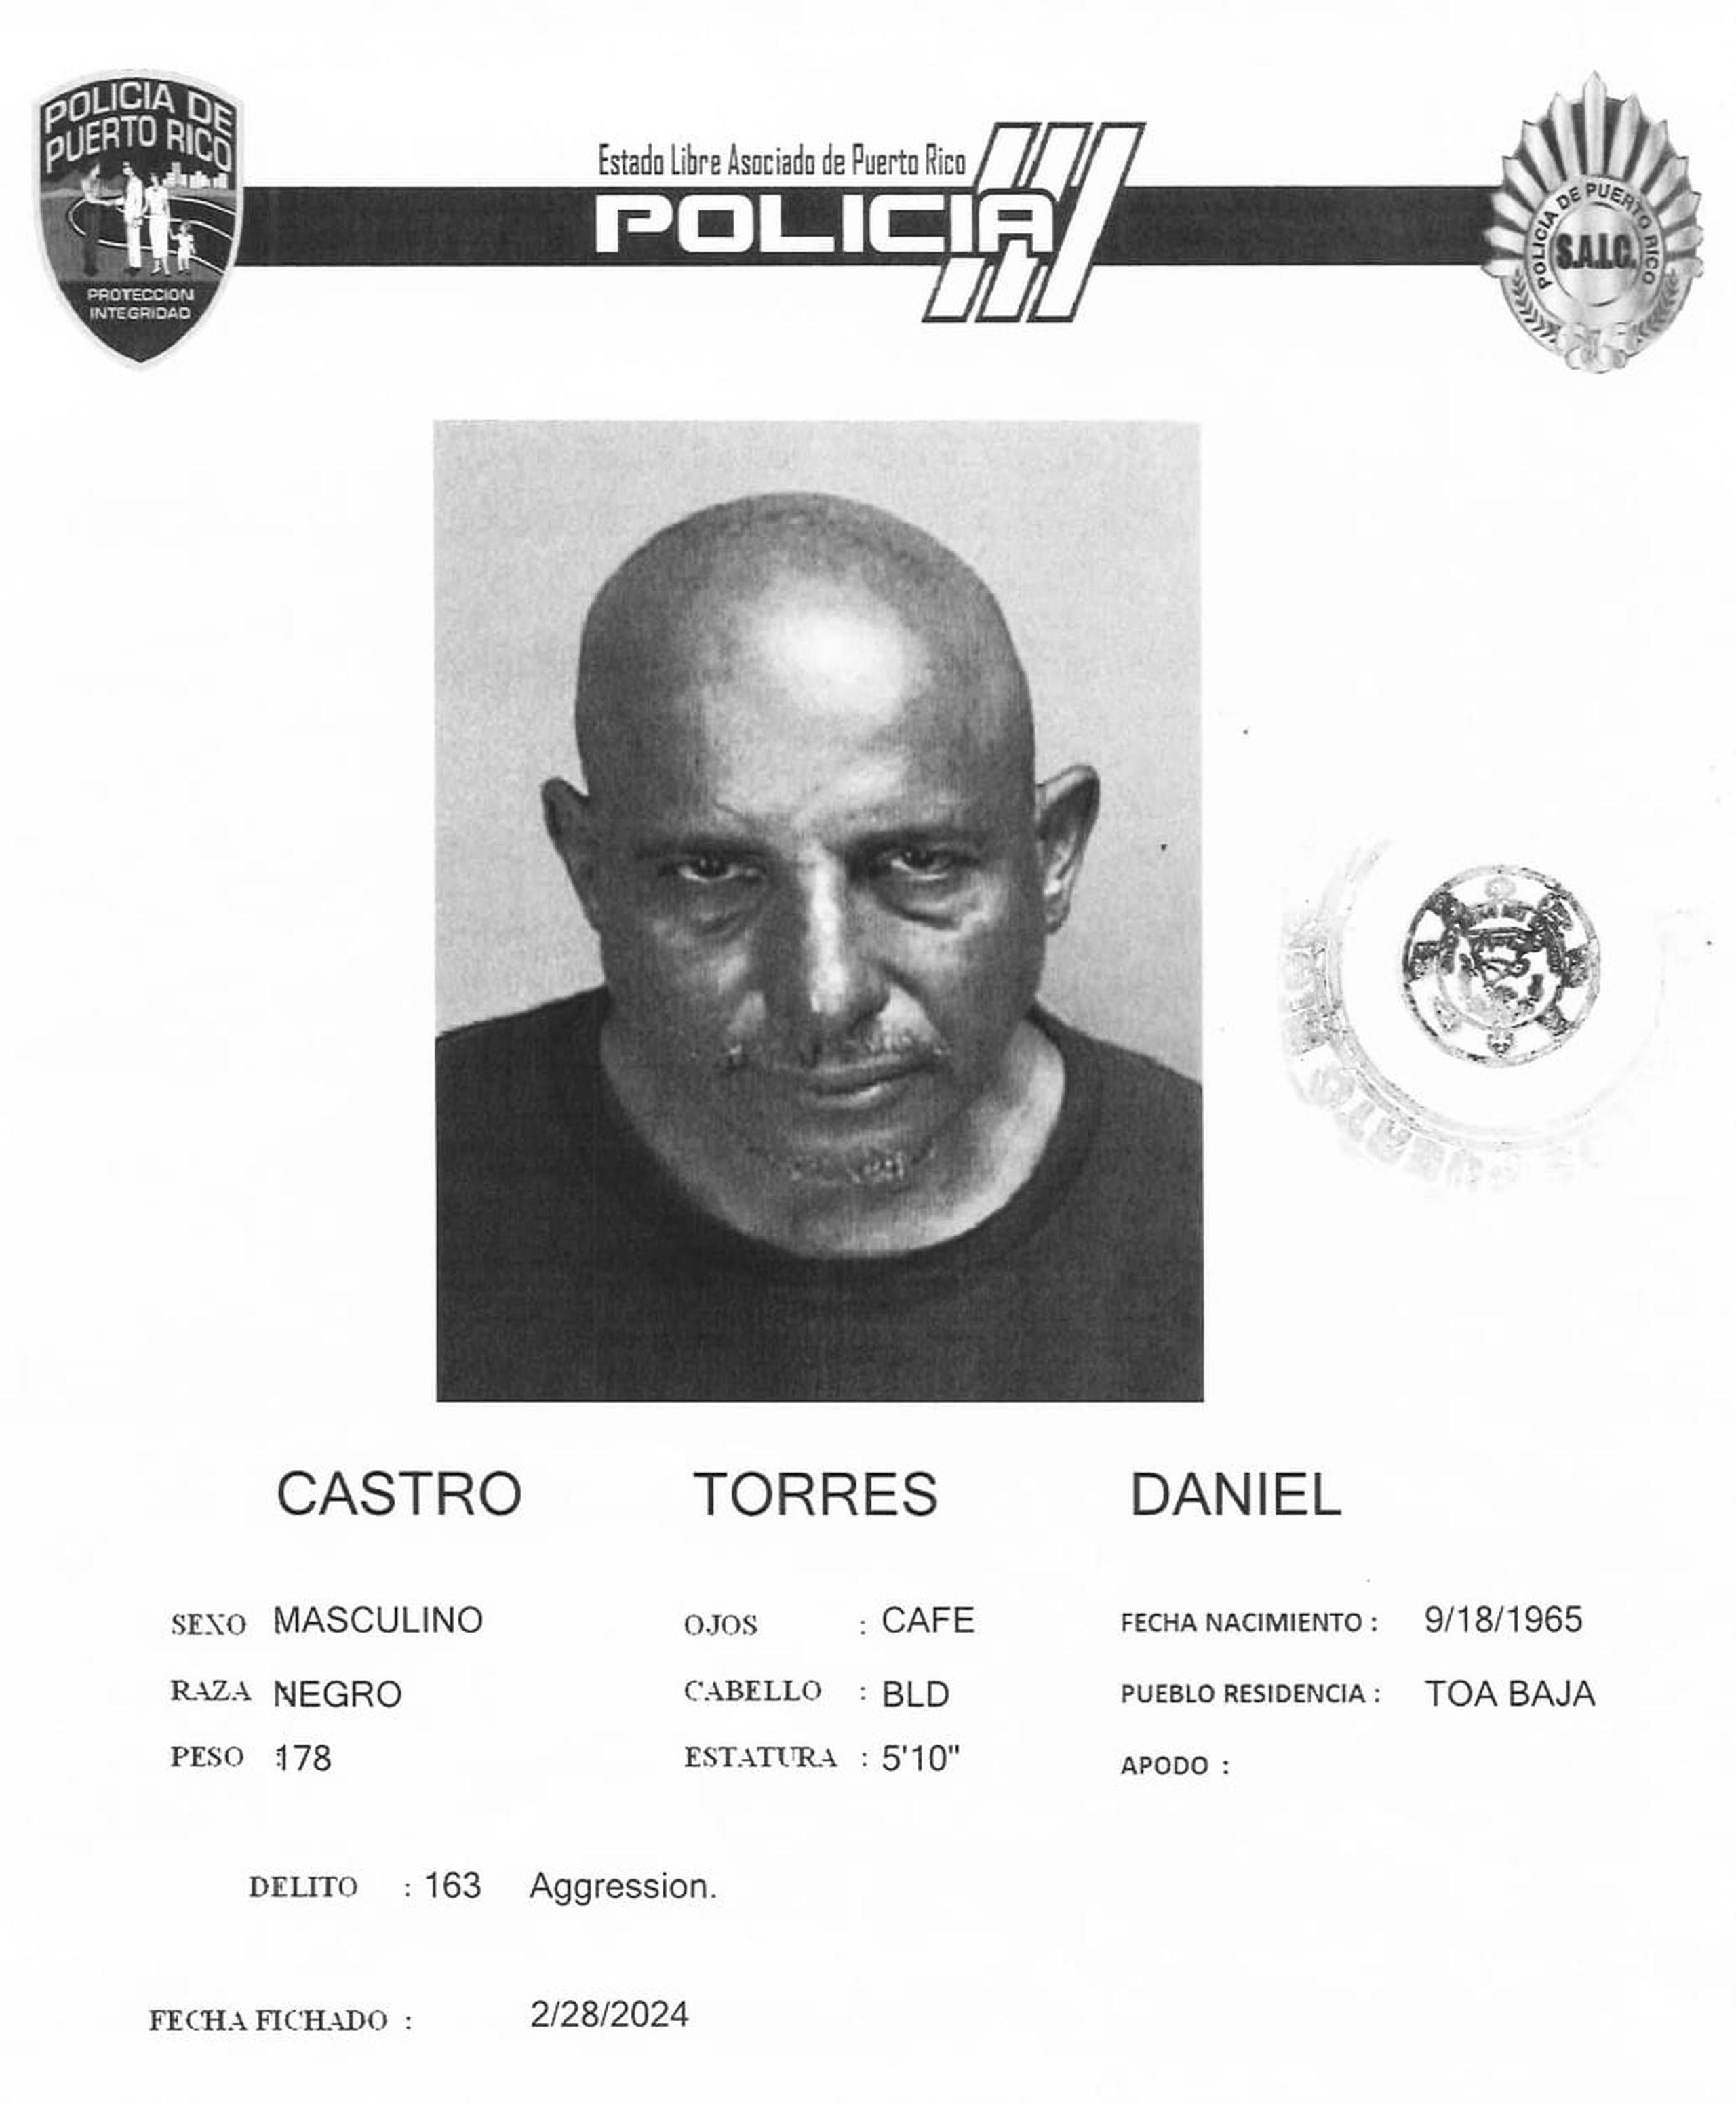 Daniel Castro Torres enfrenta cargos de agresión, amenaza y apropiación ilegal.